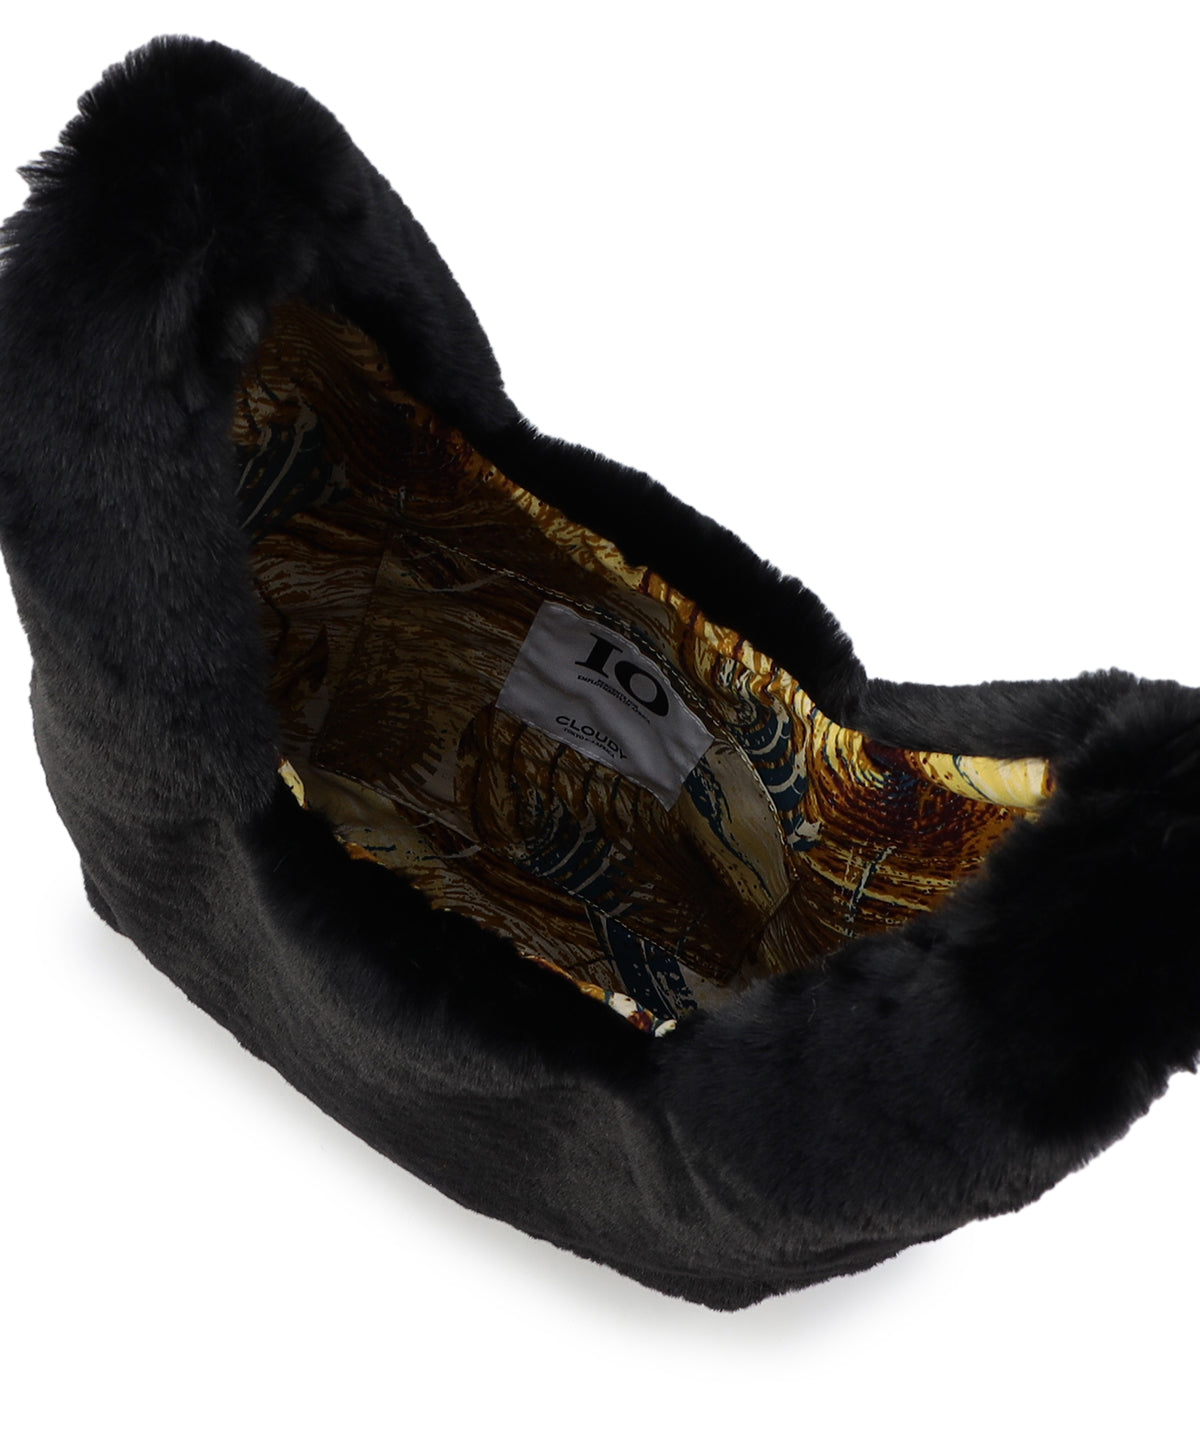 Eco Fur Convenience Bag(Medium) BLACK